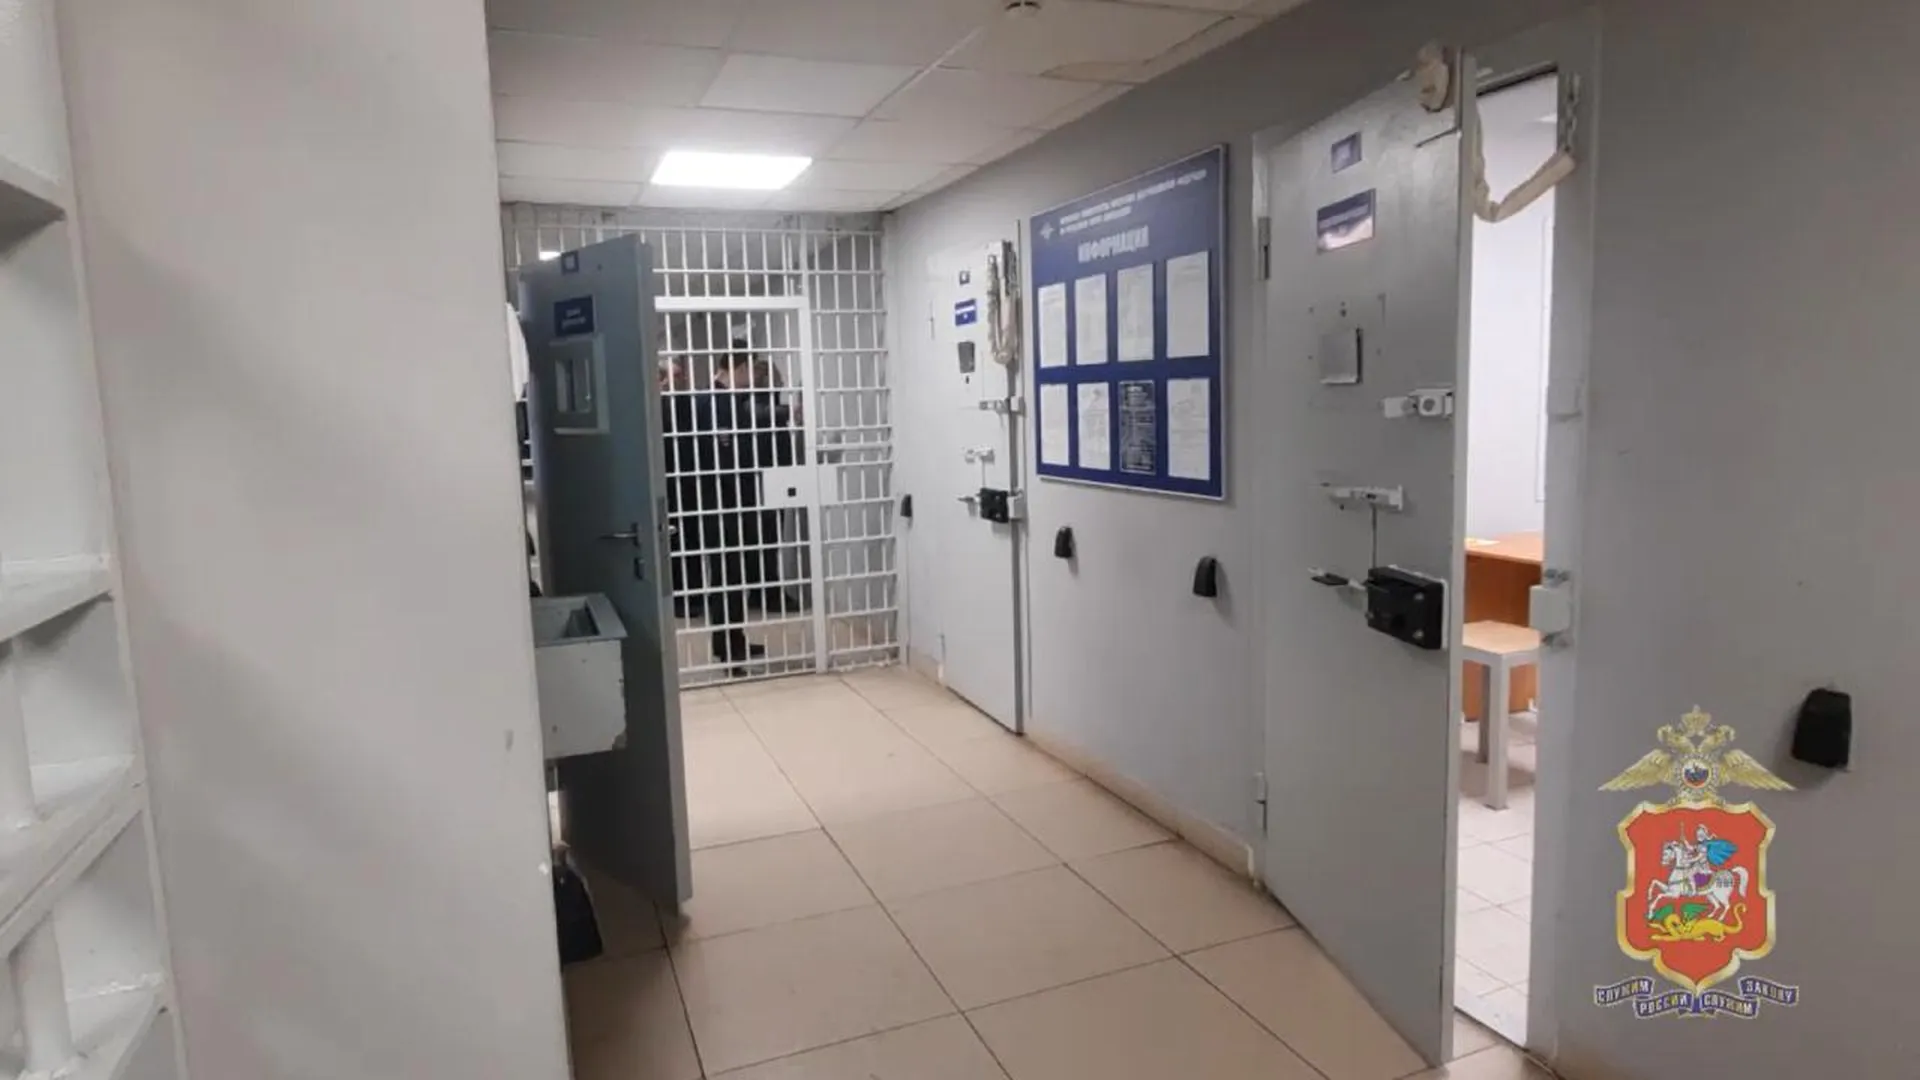 Мужчину, подозреваемого в сбыте наркотиков, задержали в подмосковном Домодедово